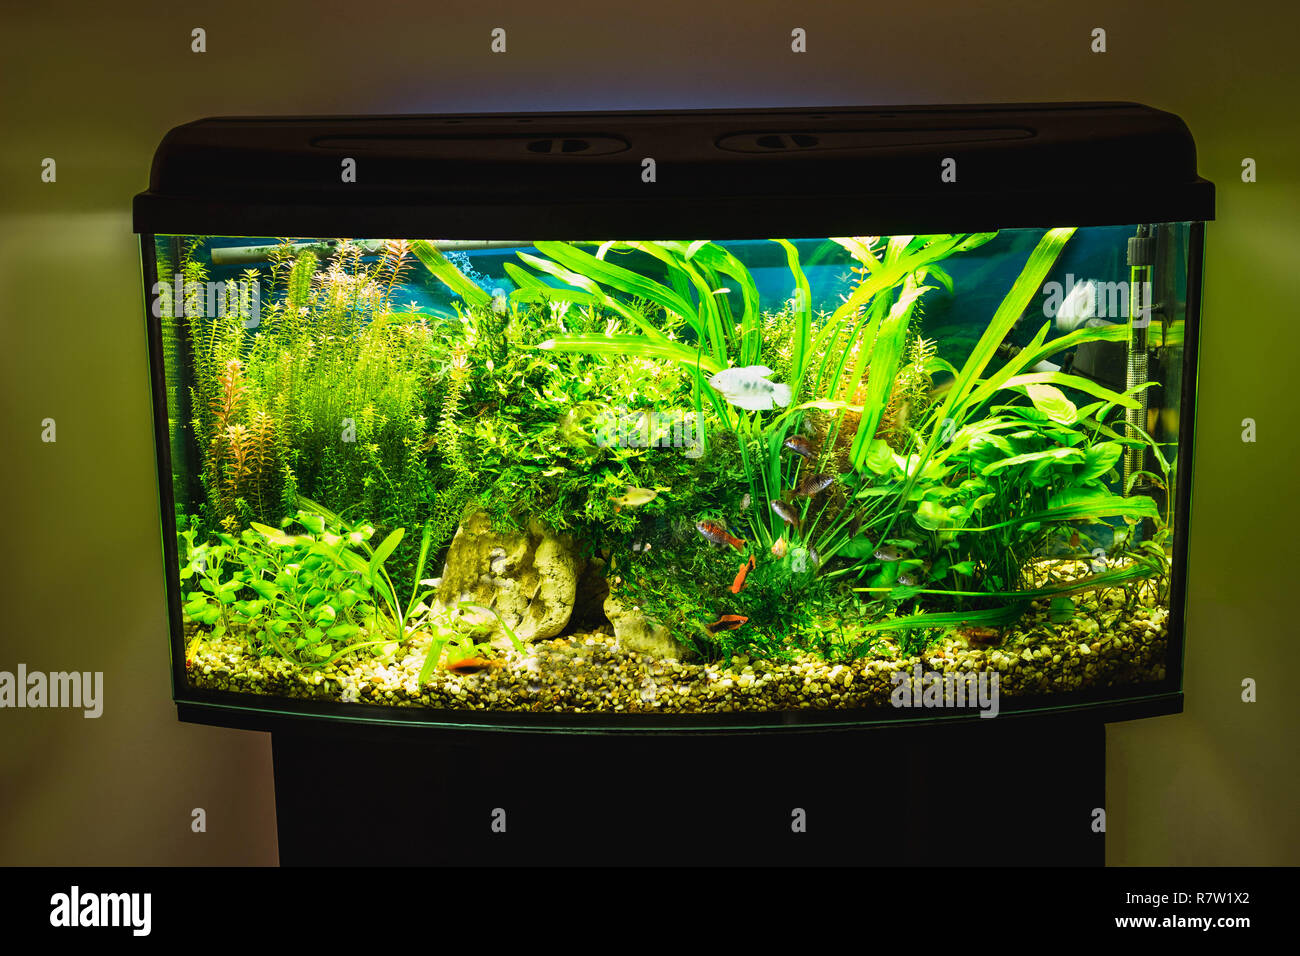 close up of aquarium tank full of fish Stock Photo